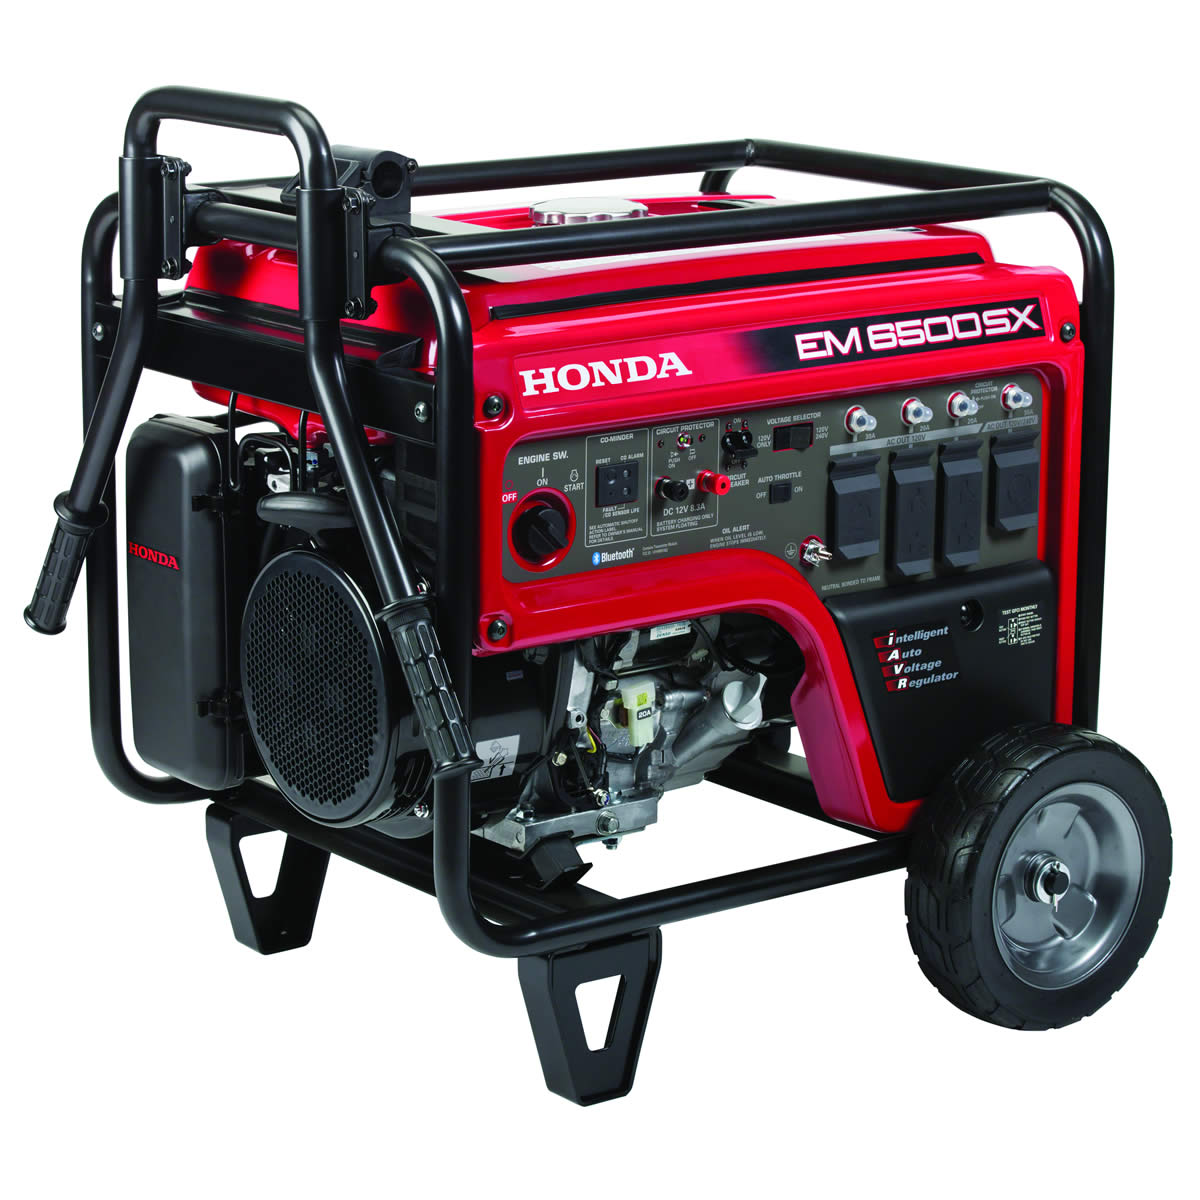 3. Honda Generator Runs But No Power